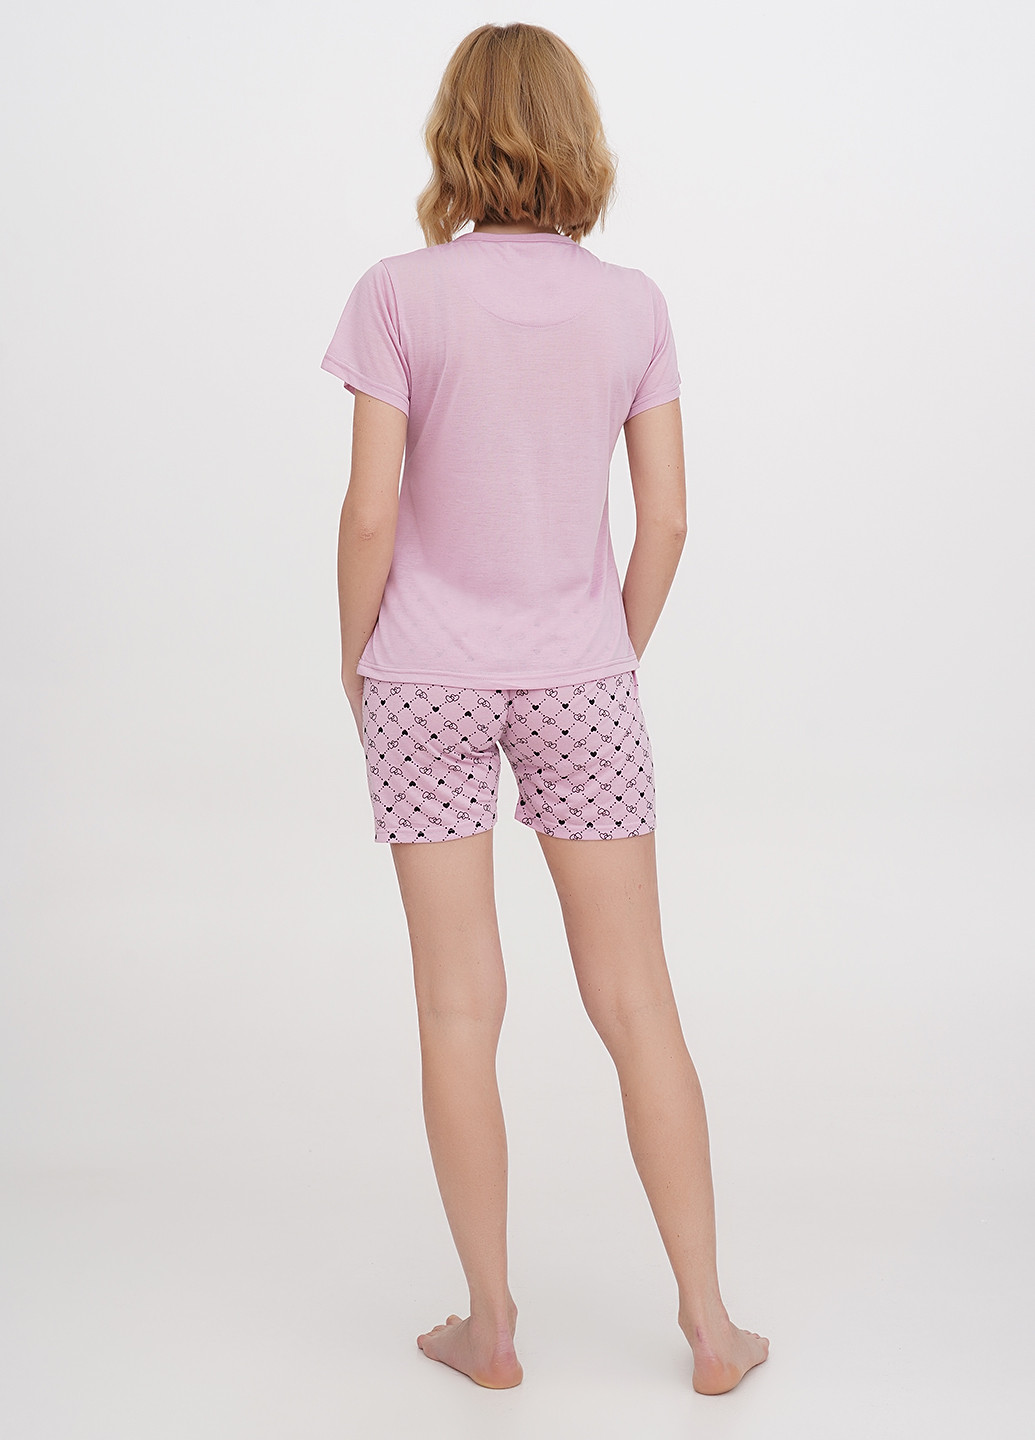 Розовая всесезон пижама (футболка, шорты) футболка + шорты Intimates